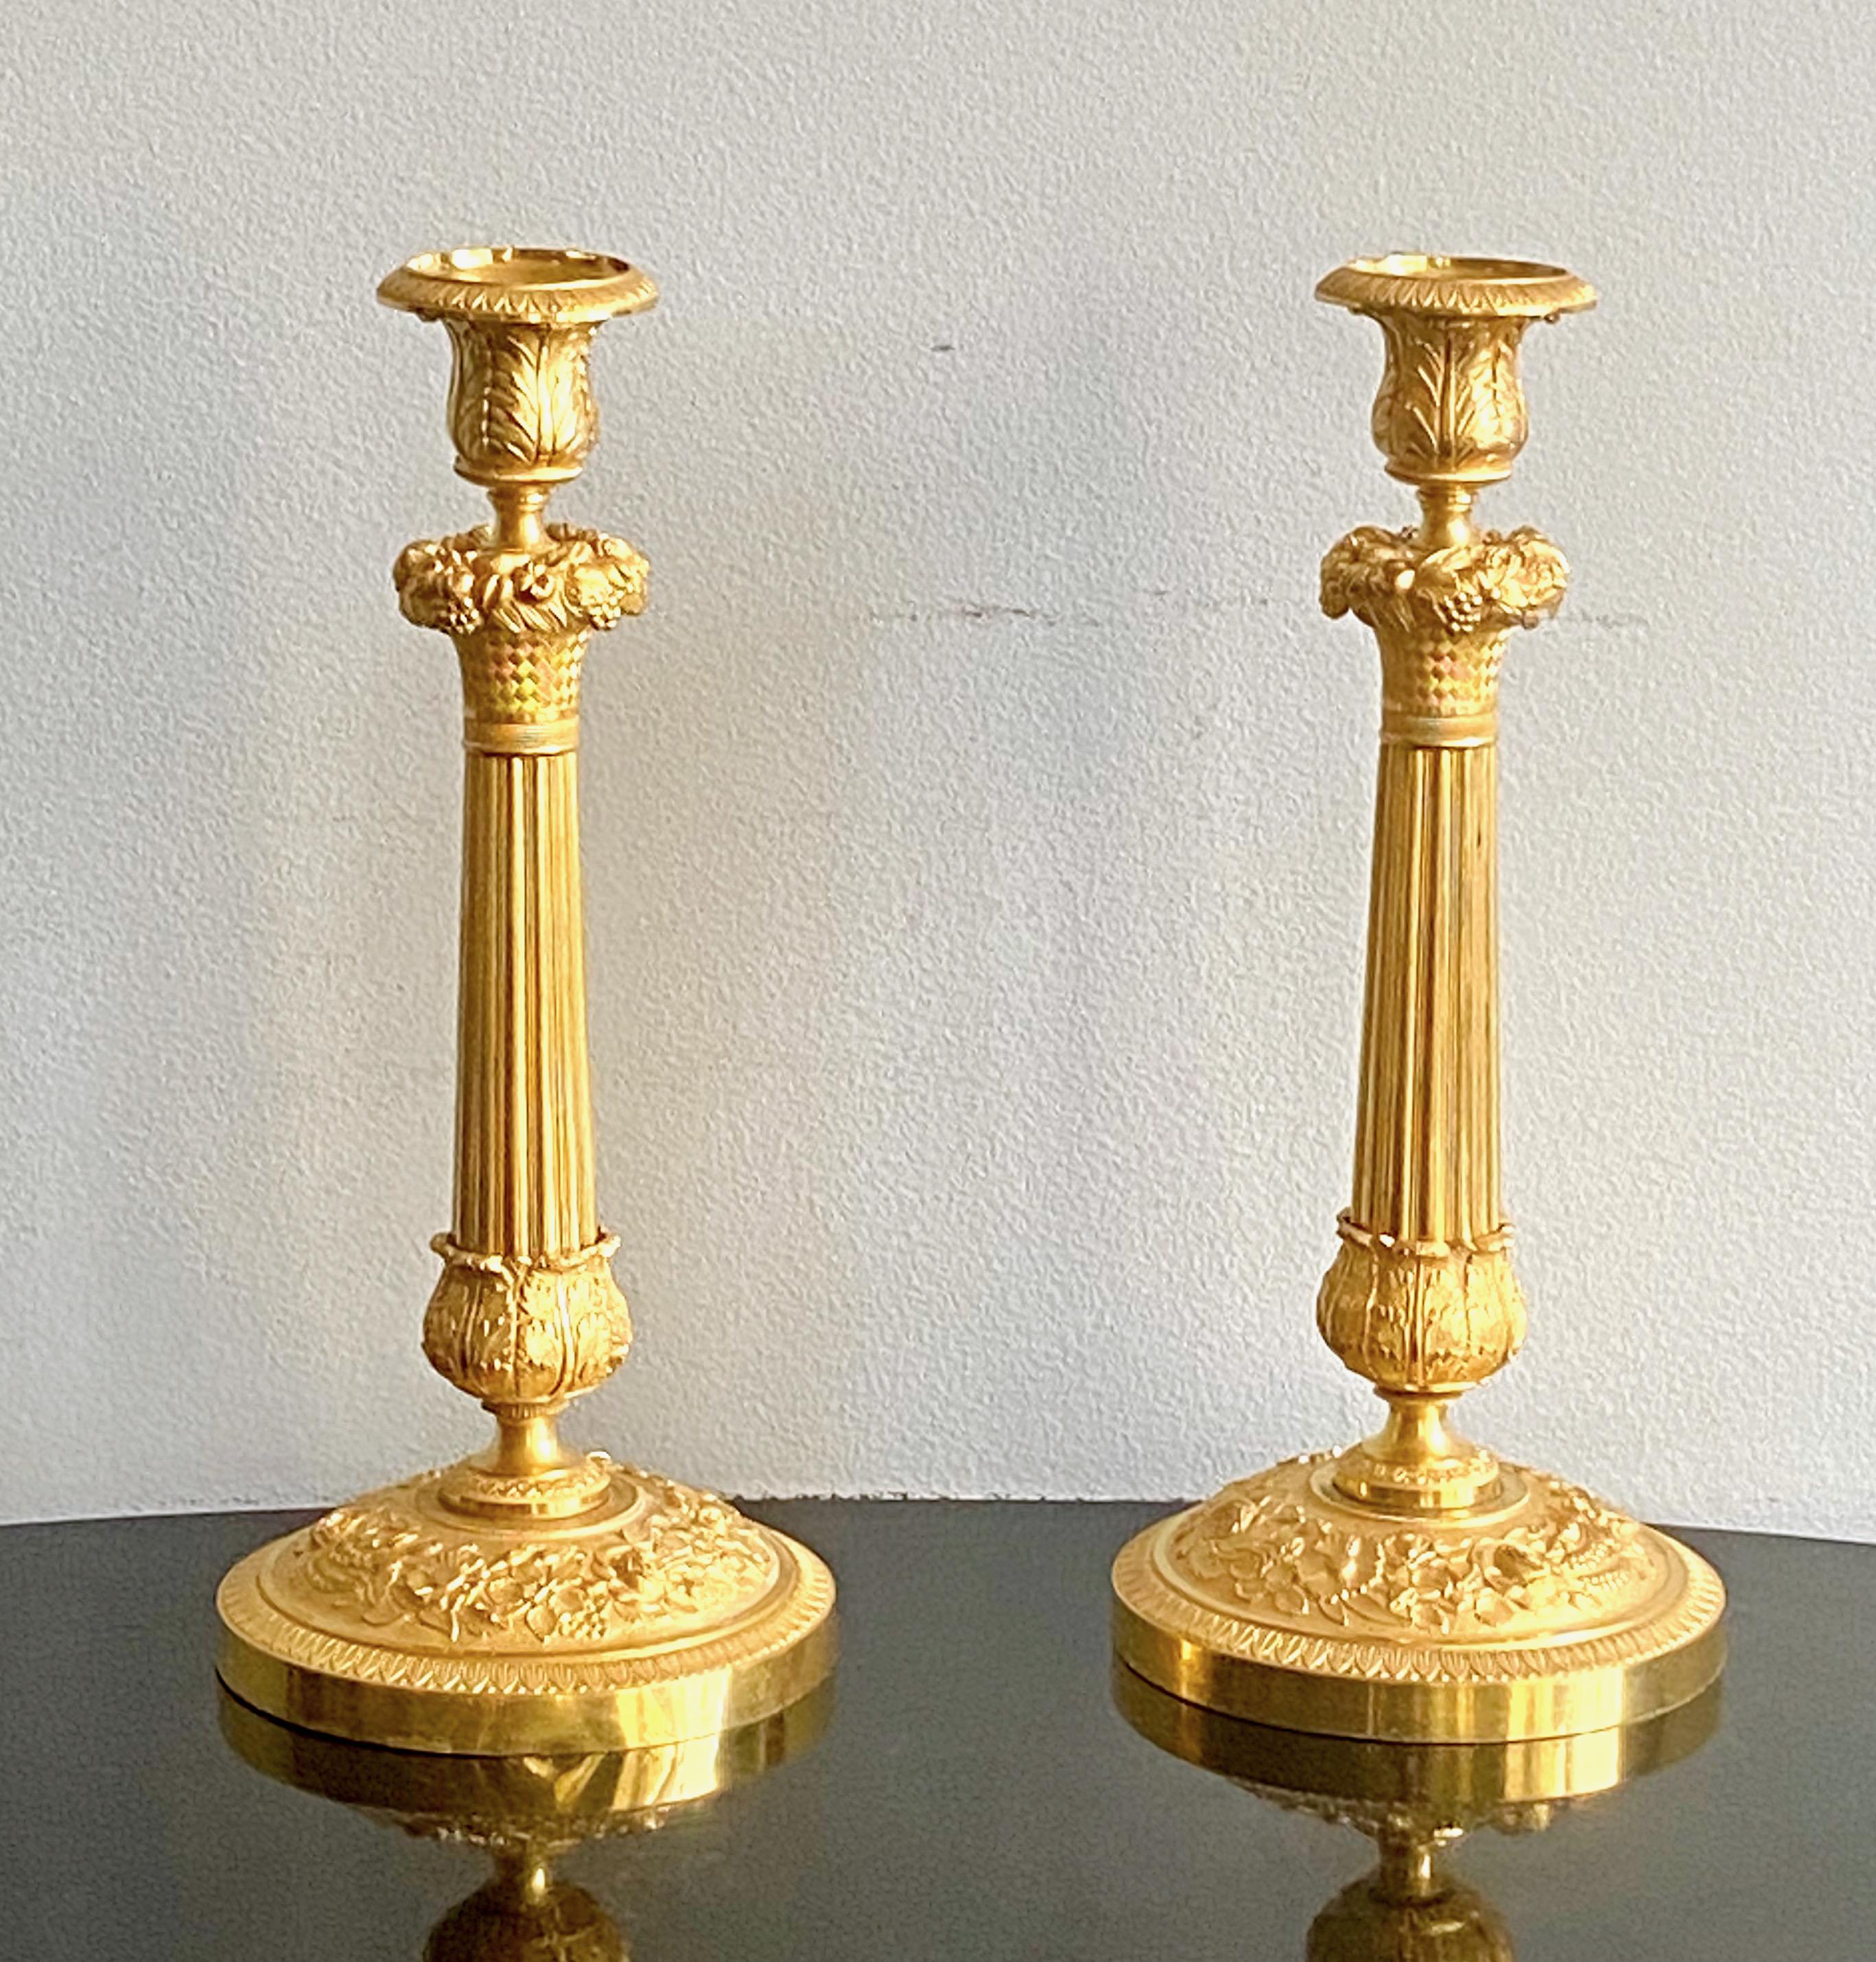 A fine pair of French empire gilt bronze candlesticks, Ca 1820-30.